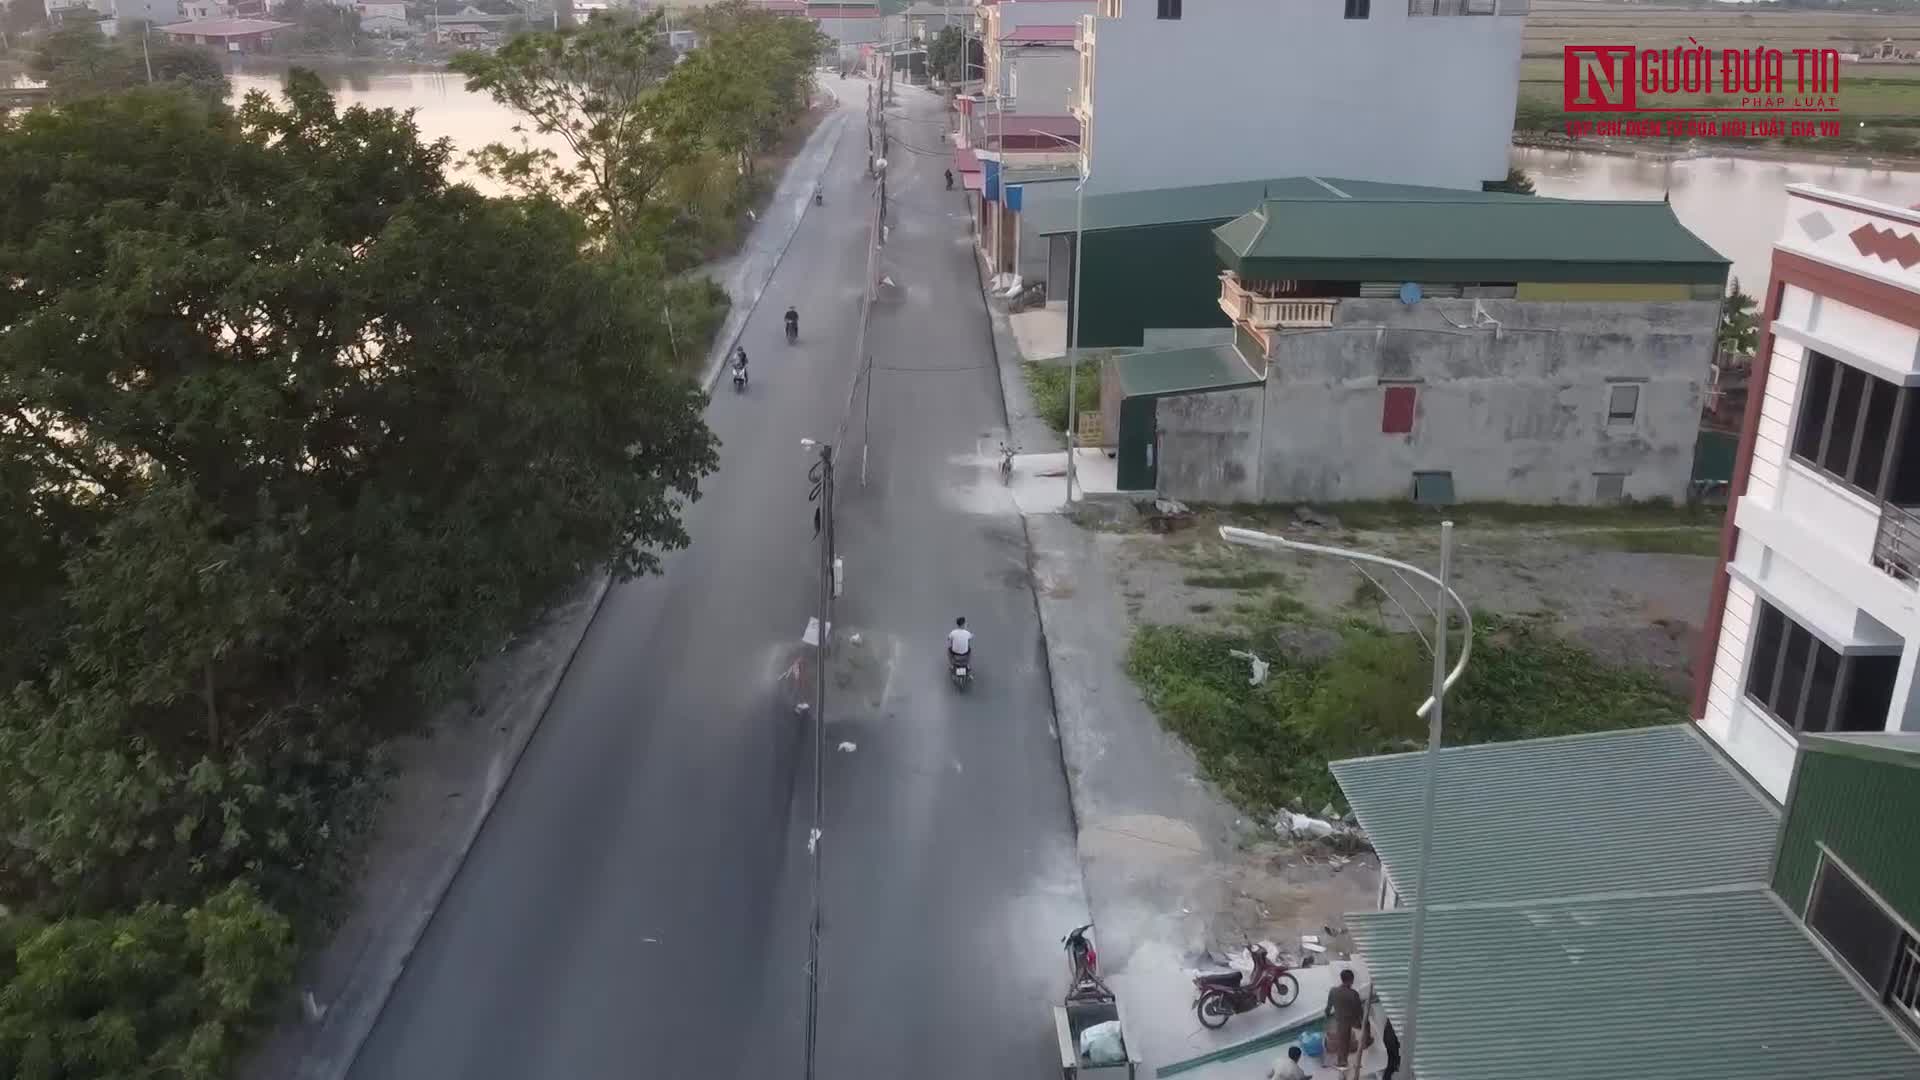 Dân sinh - Hà Nội: Hàng chục cột điện “mọc” giữa đường tỉnh lộ (Hình 11).